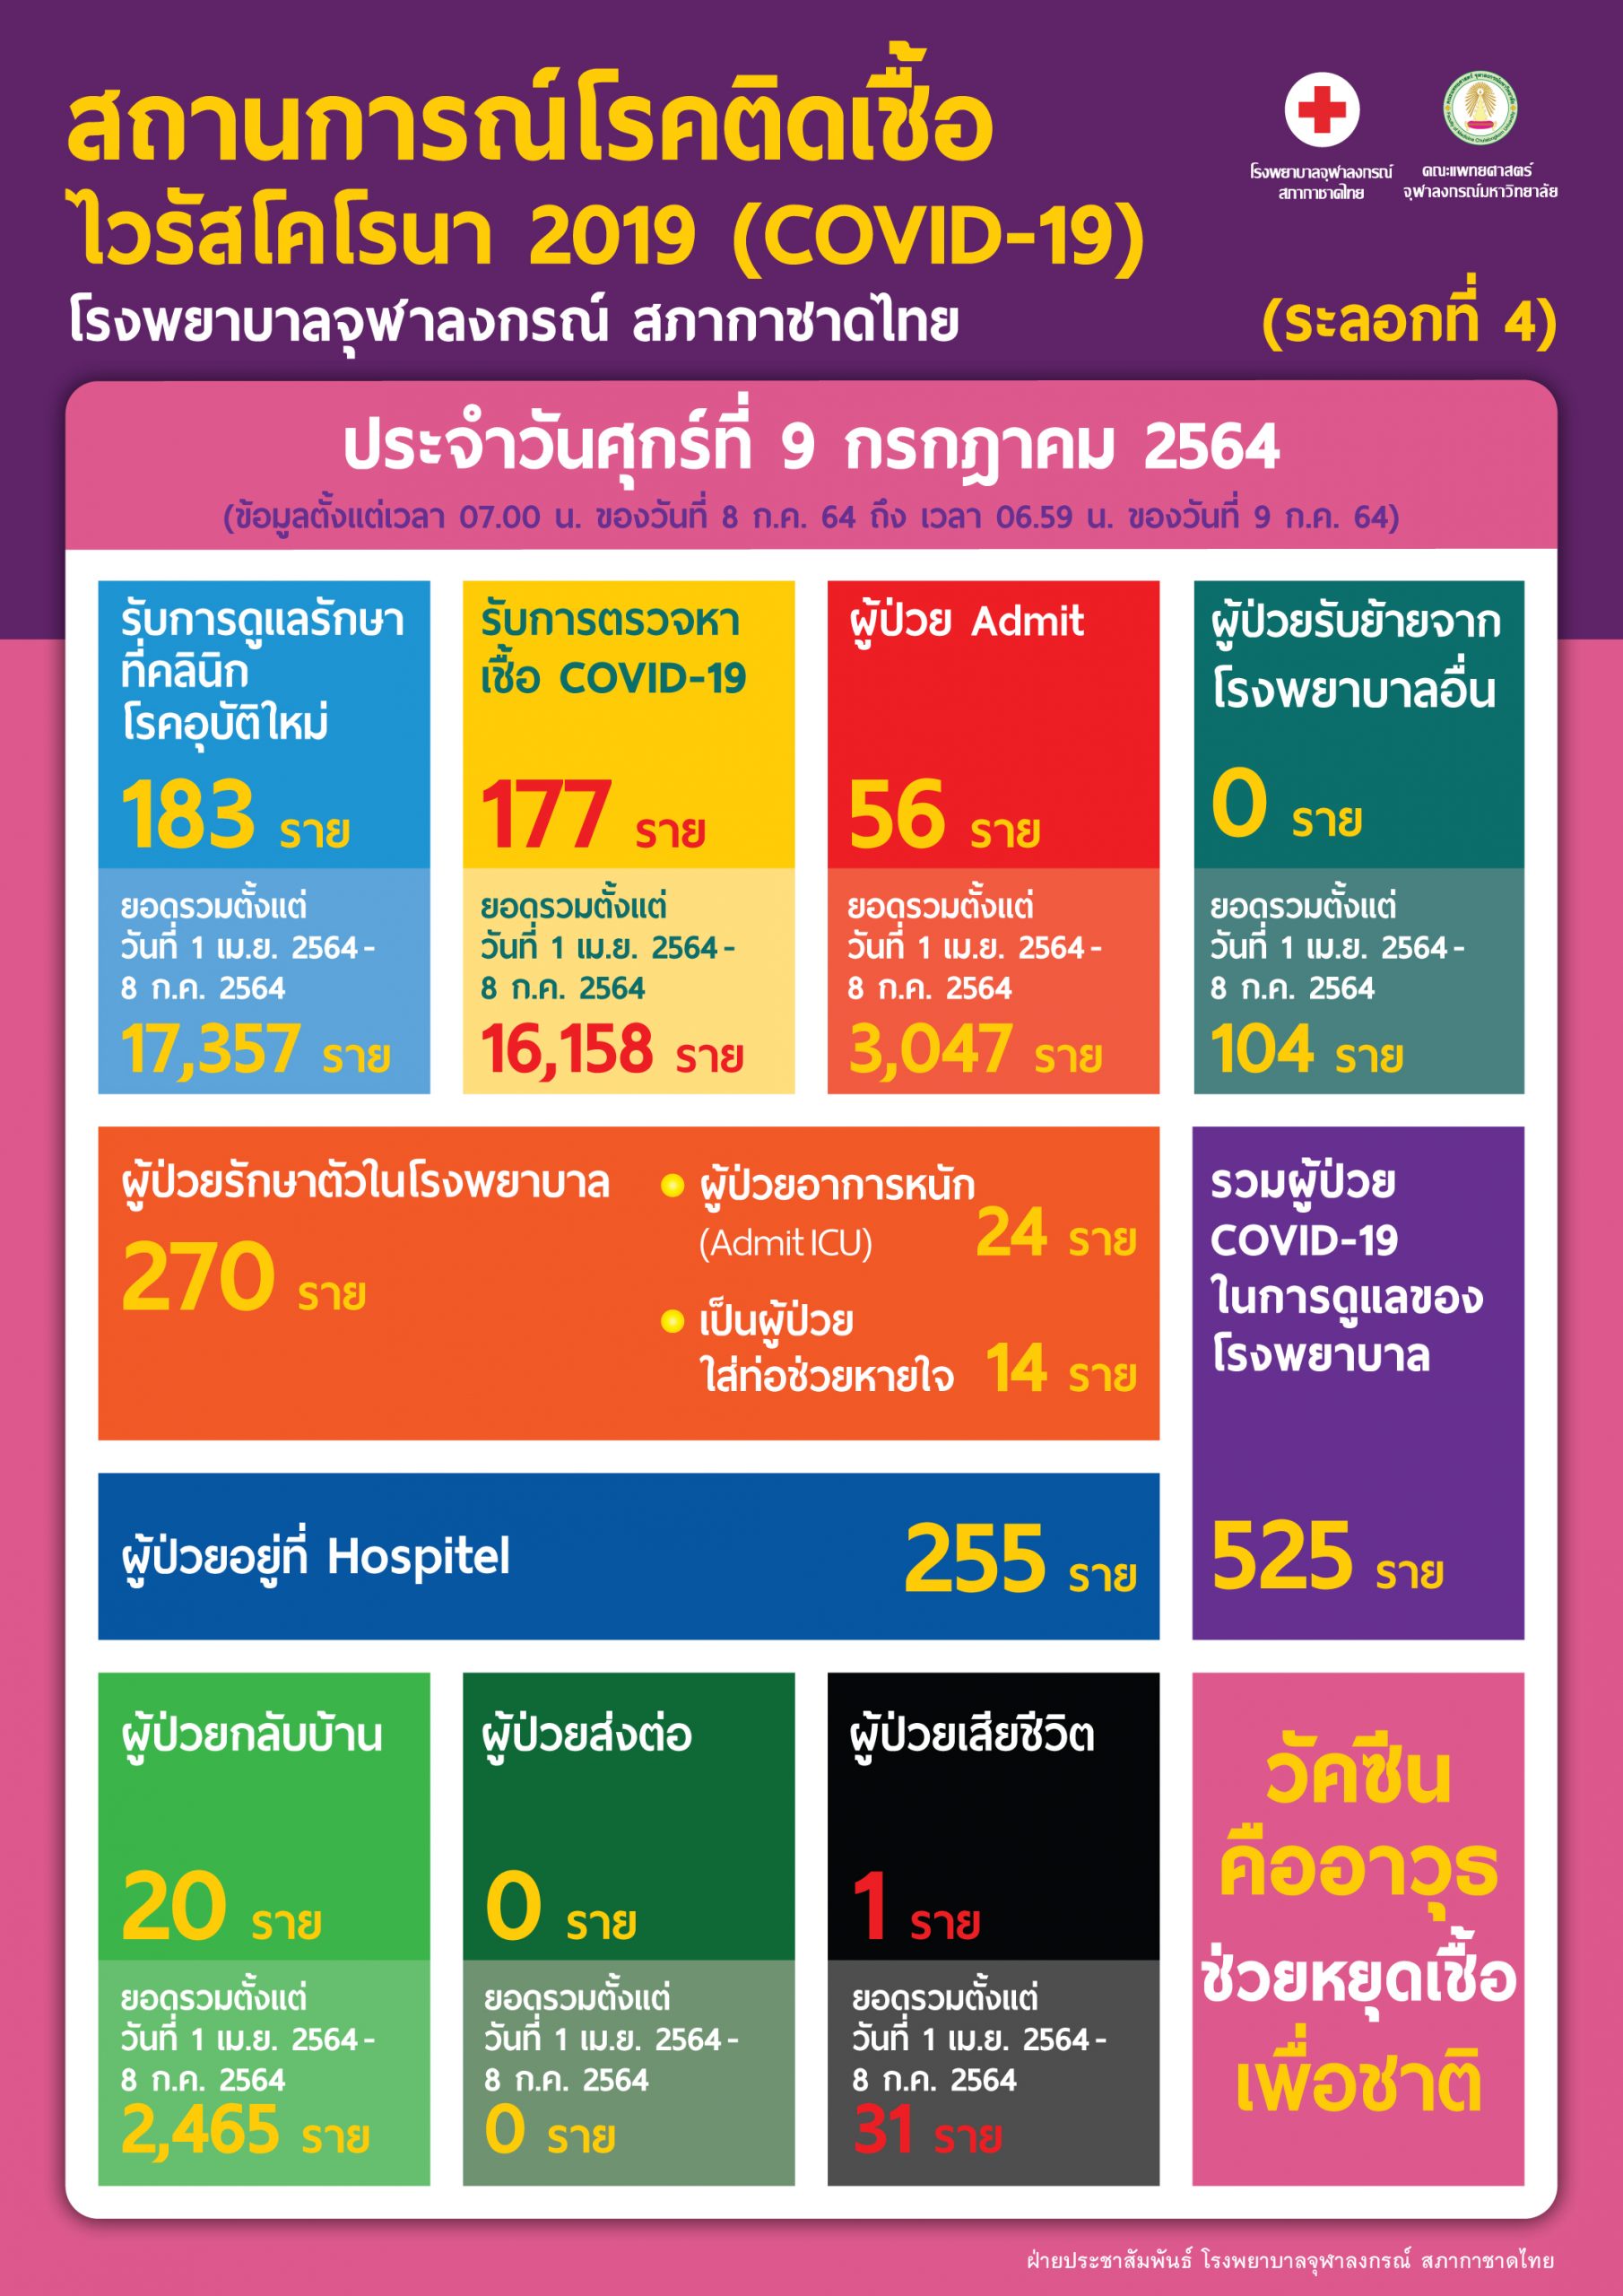 สถานการณ์โรคติดเชื้อไวรัสโคโรนา 2019 (COVID-19) (ระลอกที่ 4) โรงพยาบาลจุฬาลงกรณ์ สภากาชาดไทย  ประจำวันศุกร์ที่ 9 กรกฎาคม 2564